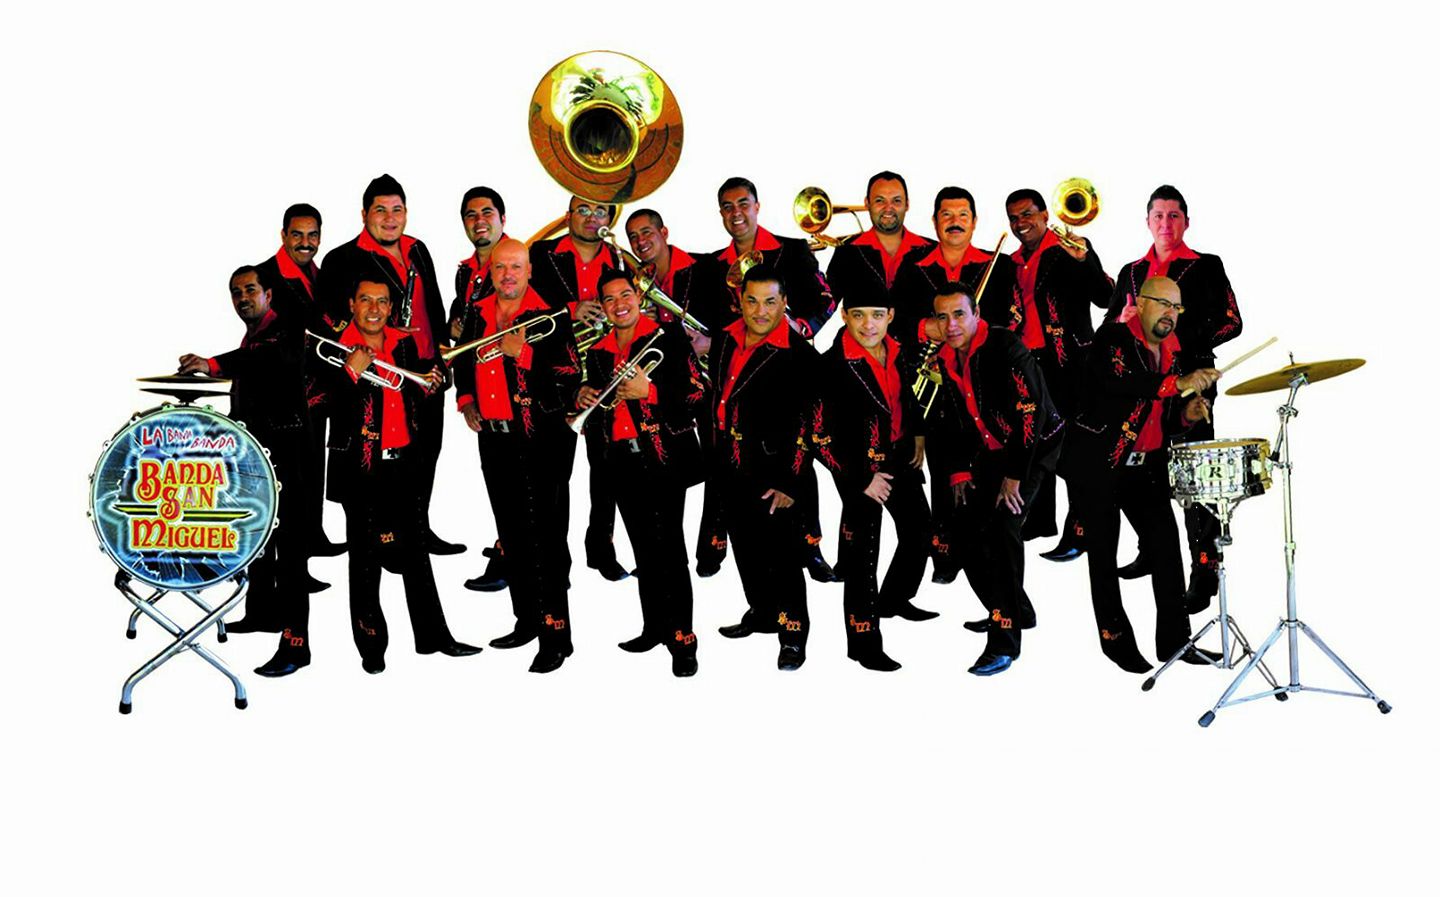 Banda San Miguel La Impresionante Banda Banda San Miguel